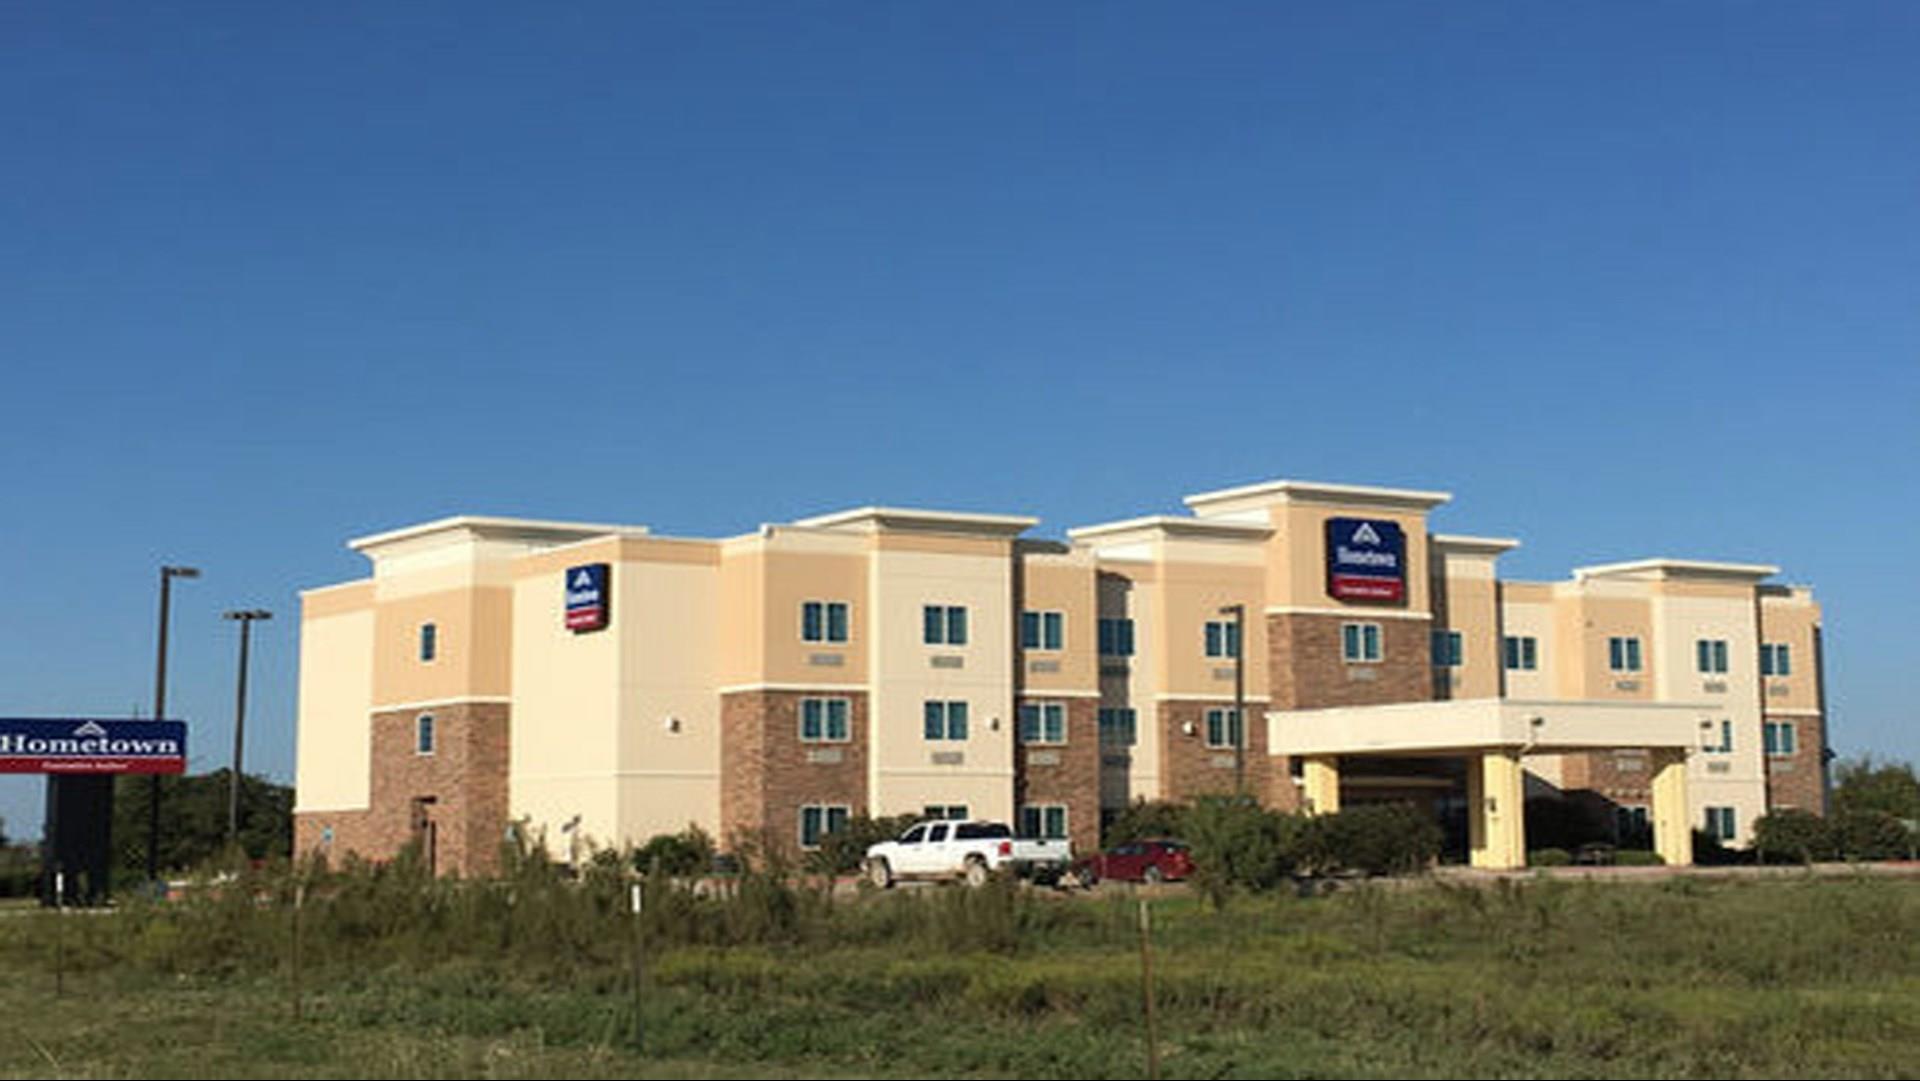 Hometown Executive Suites in Bridgeport, TX